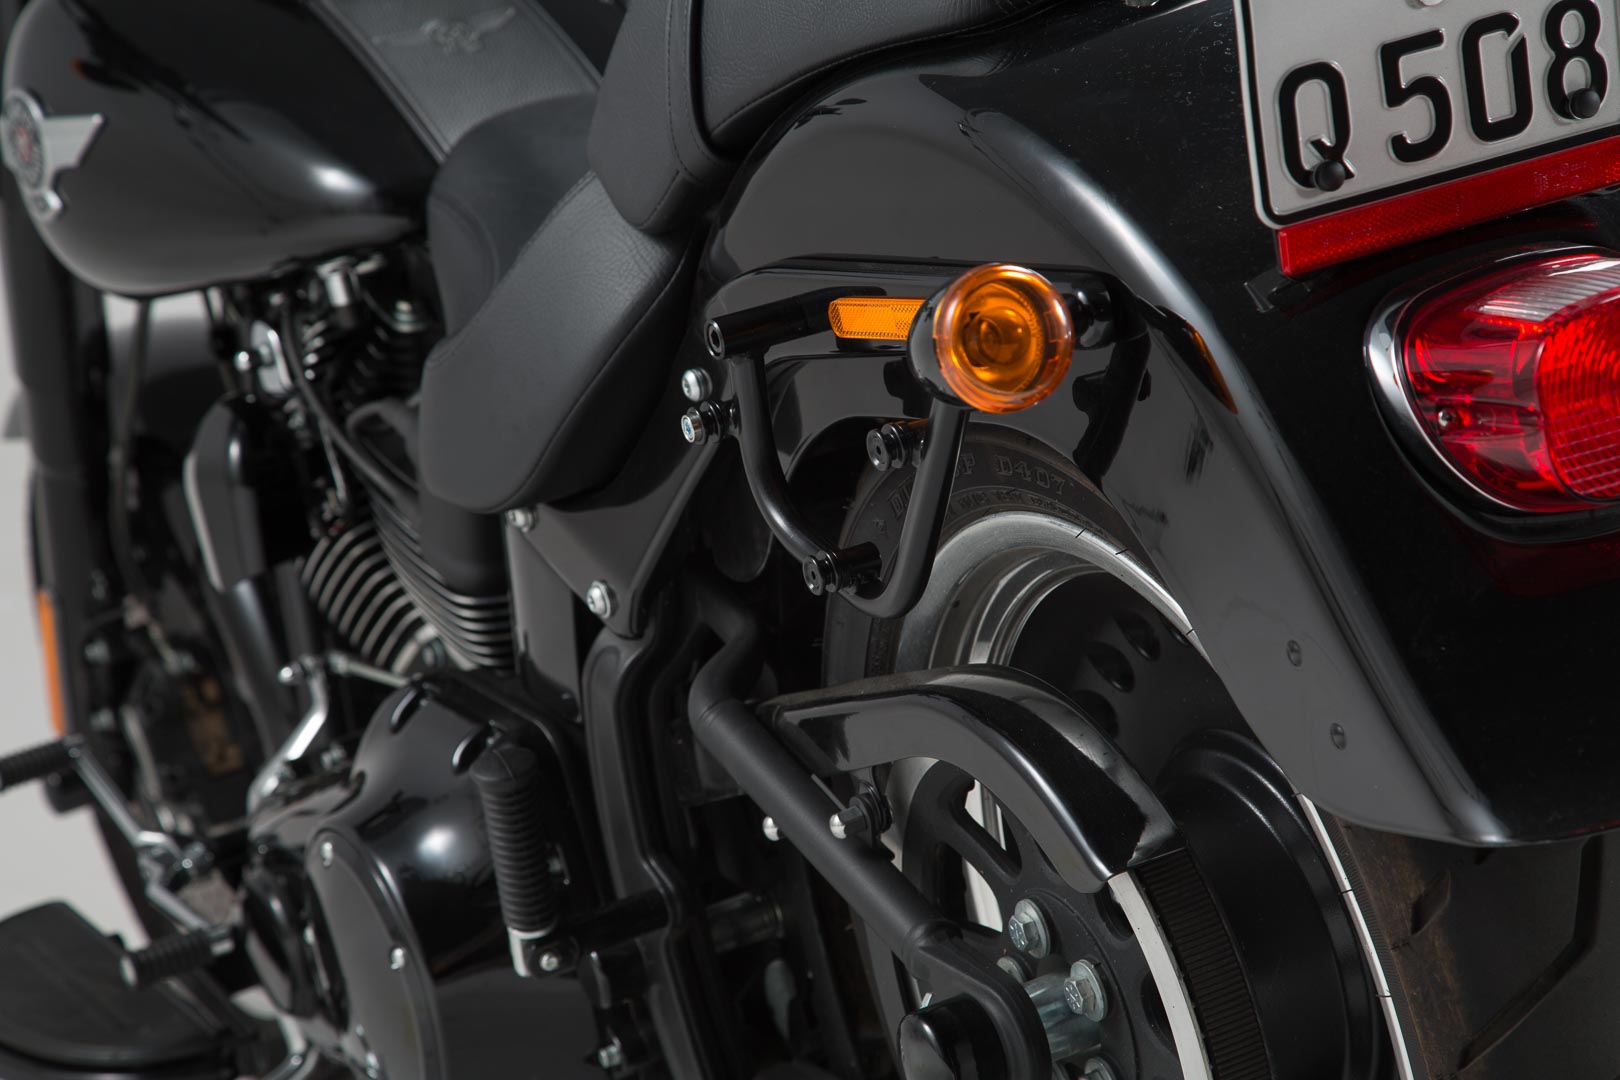 SW-Motech SLC soporte lateral izqiuerda - Harley Davidson Softail modelos. -